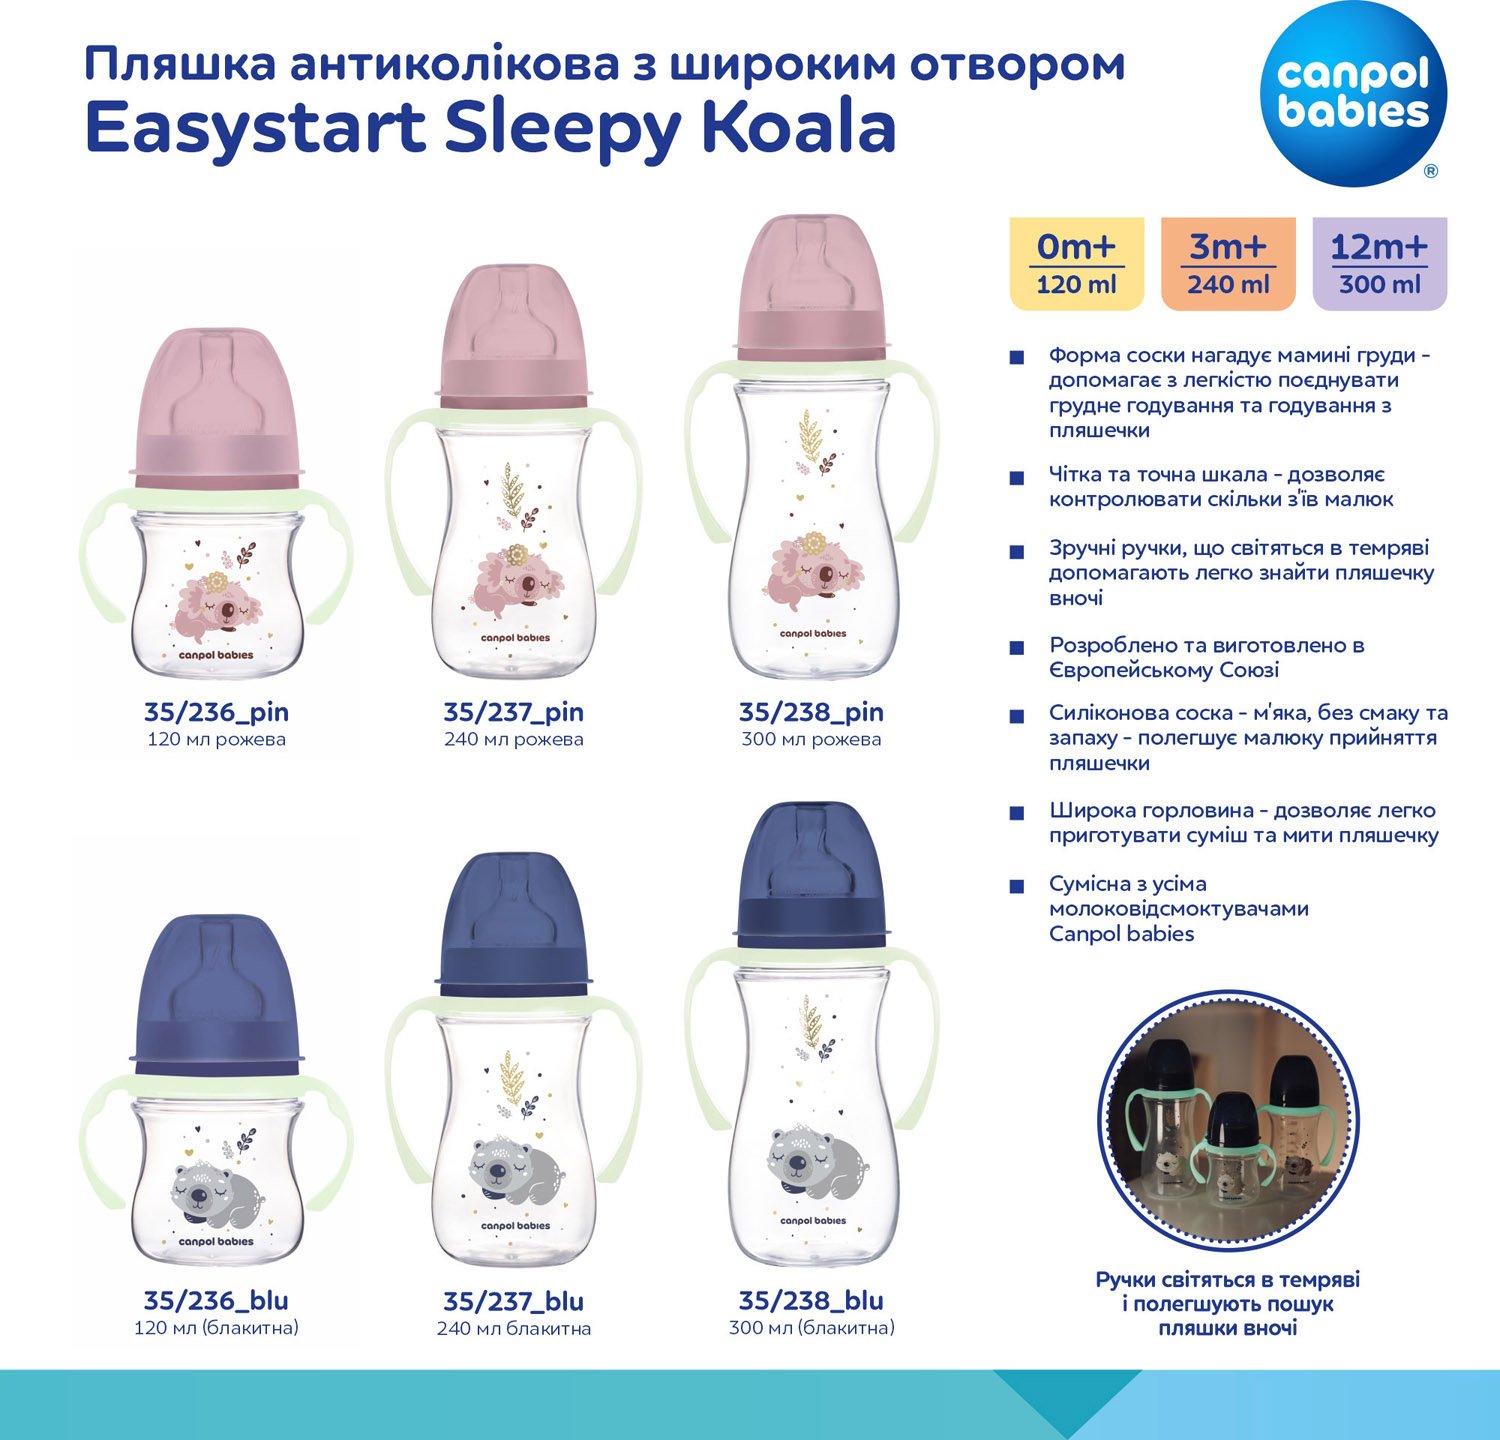 Пляшечка для годування Canpol babies Easystart Sleepy Koala, антиколікова, 300 мл, рожева (35/238_pin) - фото 11